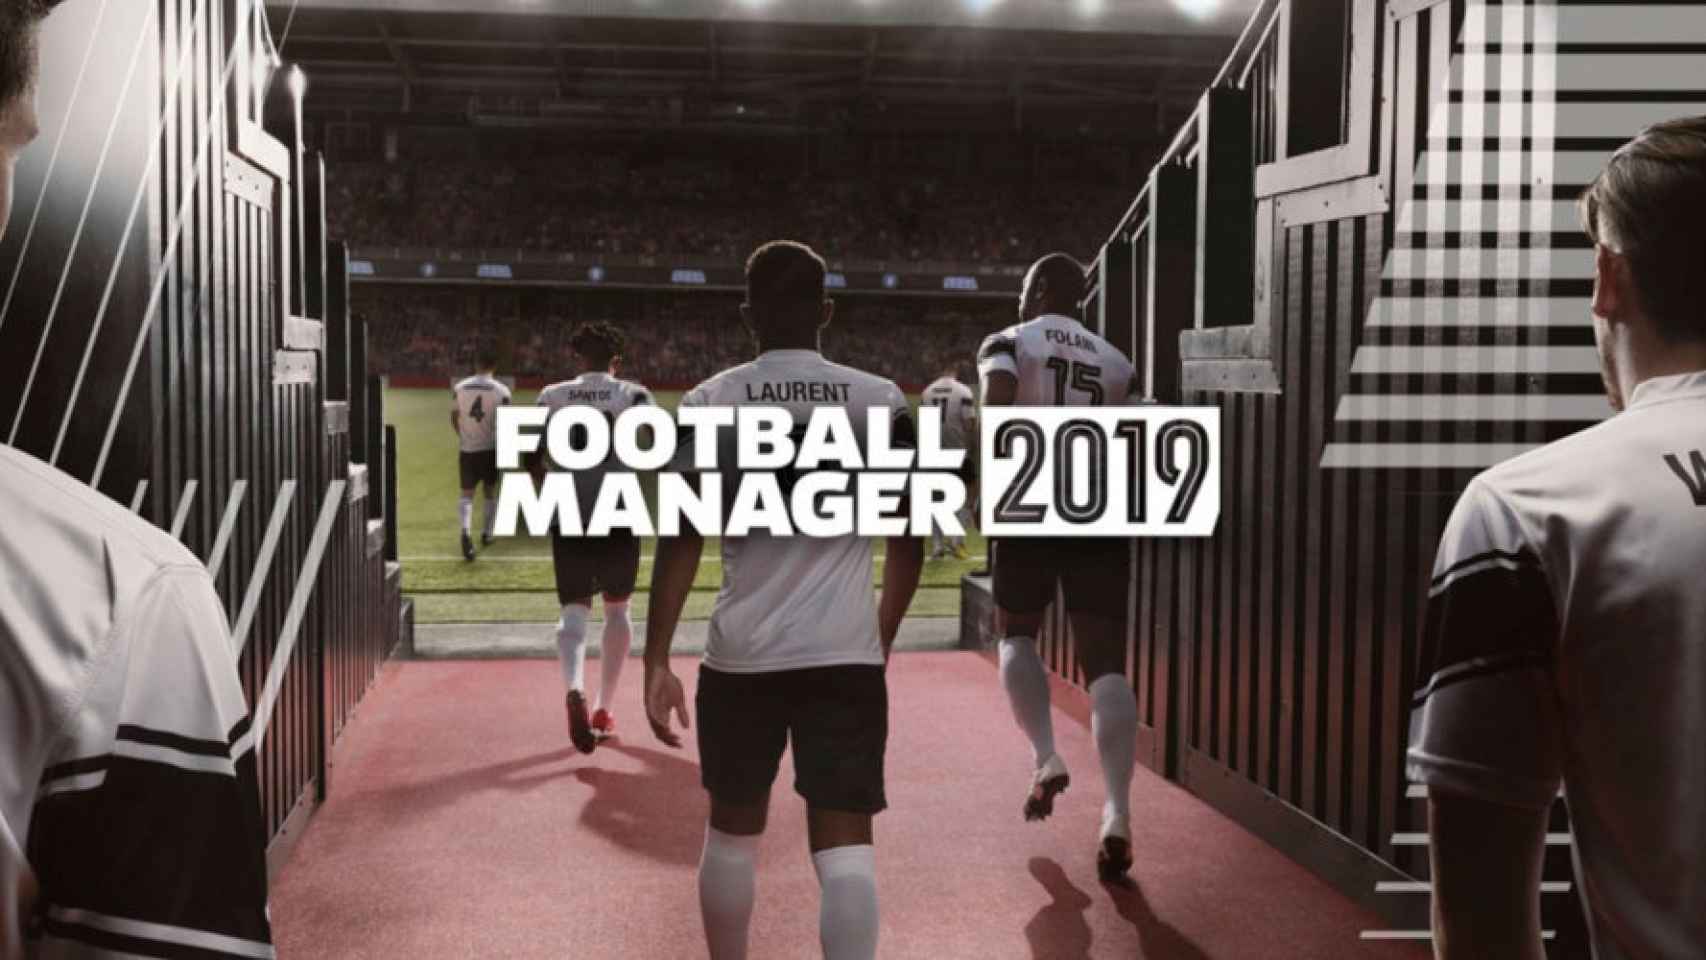 Lleva a tu equipo de fútbol a la gloria con el nuevo Football Manager 2019